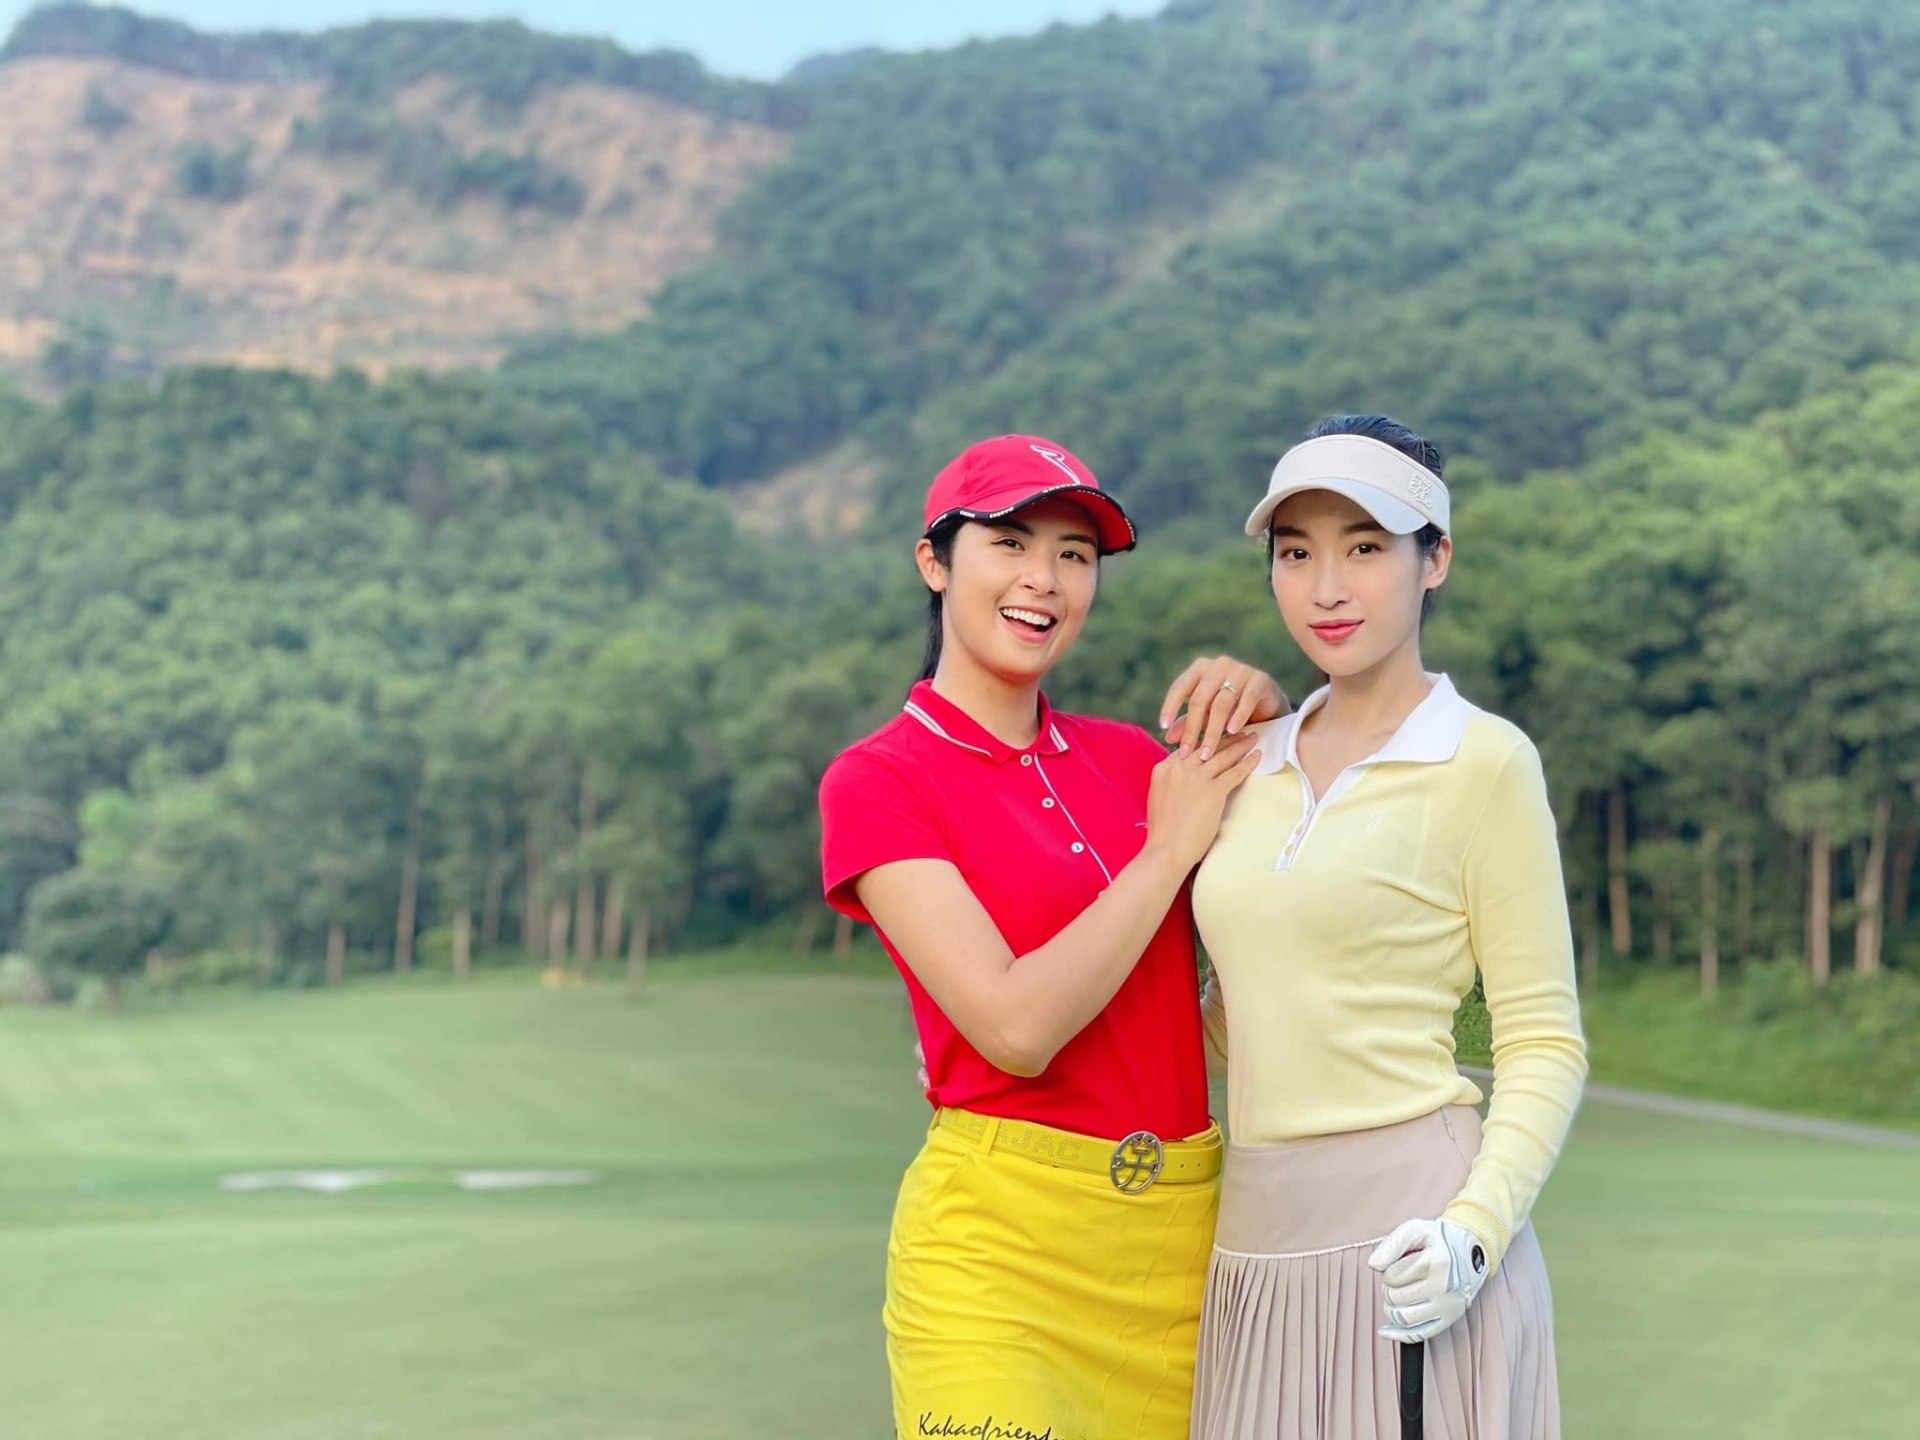 Hoa hậu Đỗ Mỹ Linh đi đánh golf cùng Hoa hậu Ngọc Hân trong ngày 1/5. Hai nàng hậu được khen ngợi với vẻ ngoài rạng rỡ, sắc vóc tươi tắn.